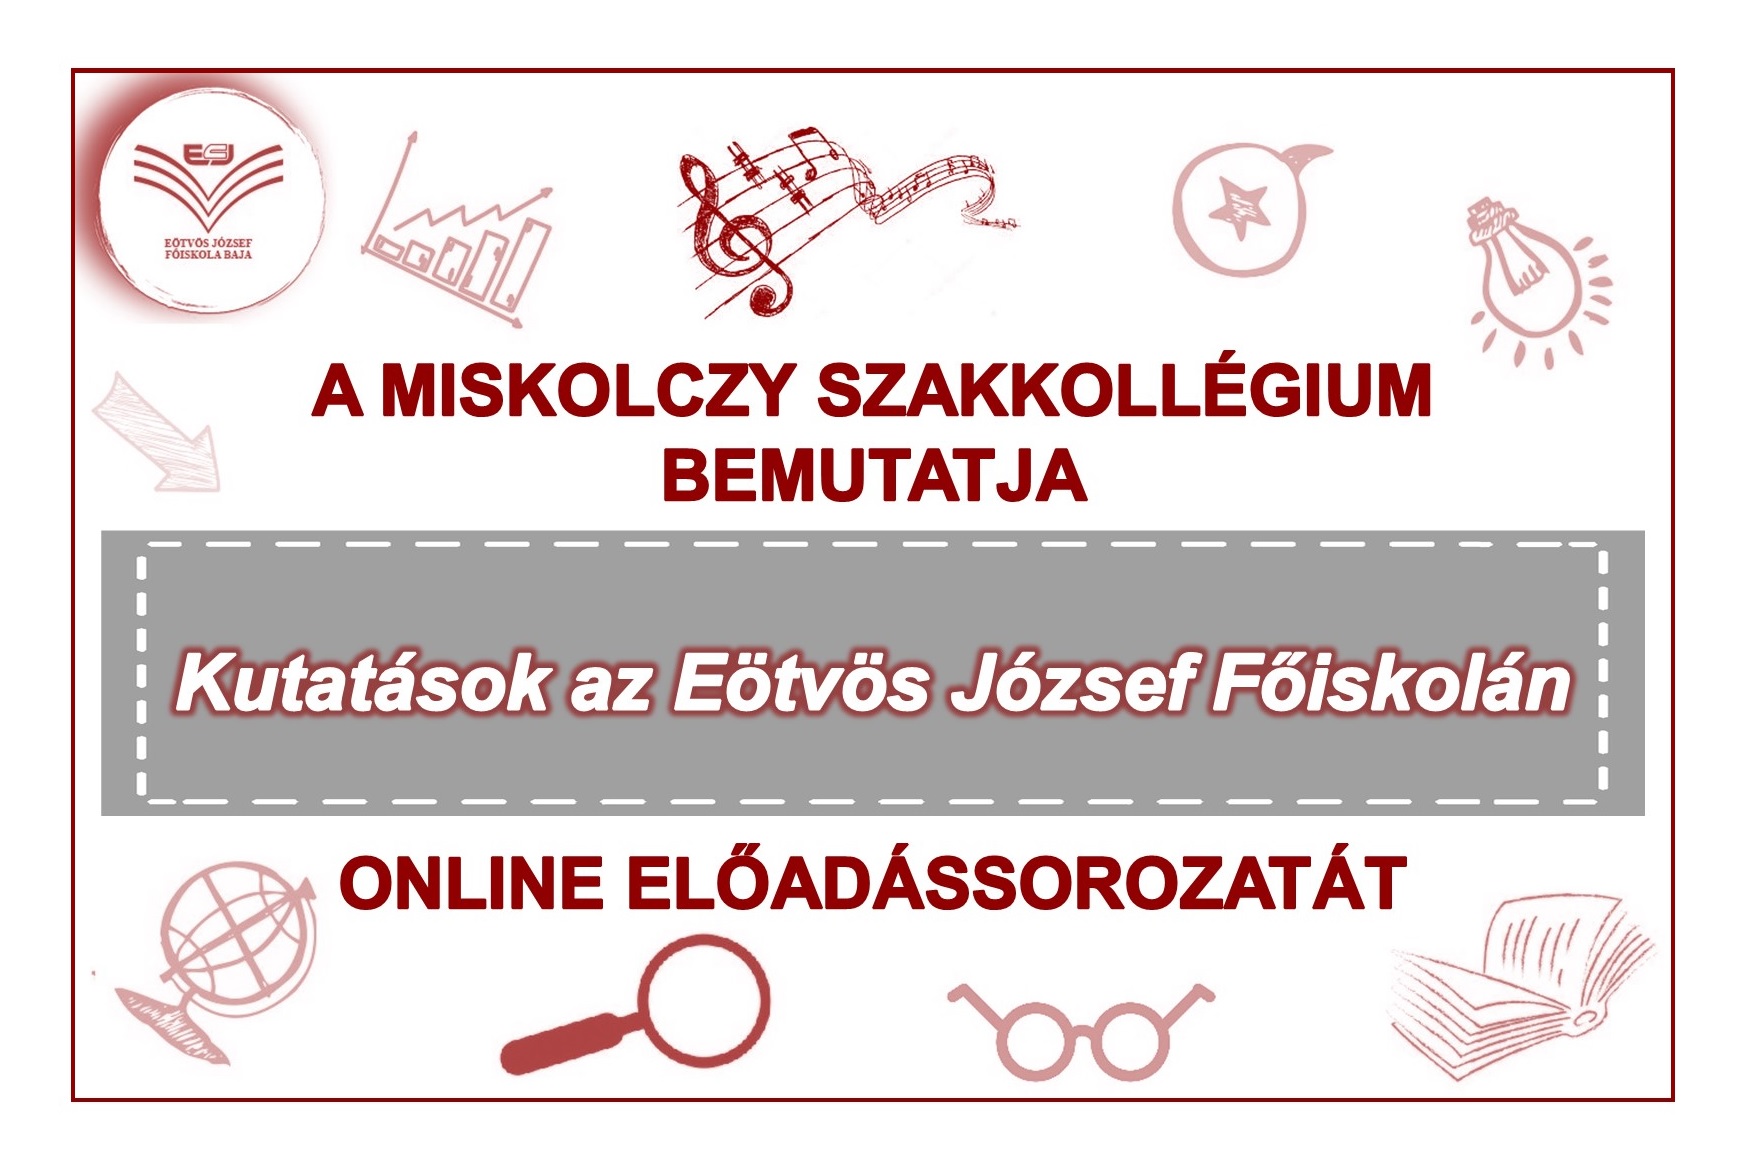 A Miskolczy Szakkollégium online programsorozata.